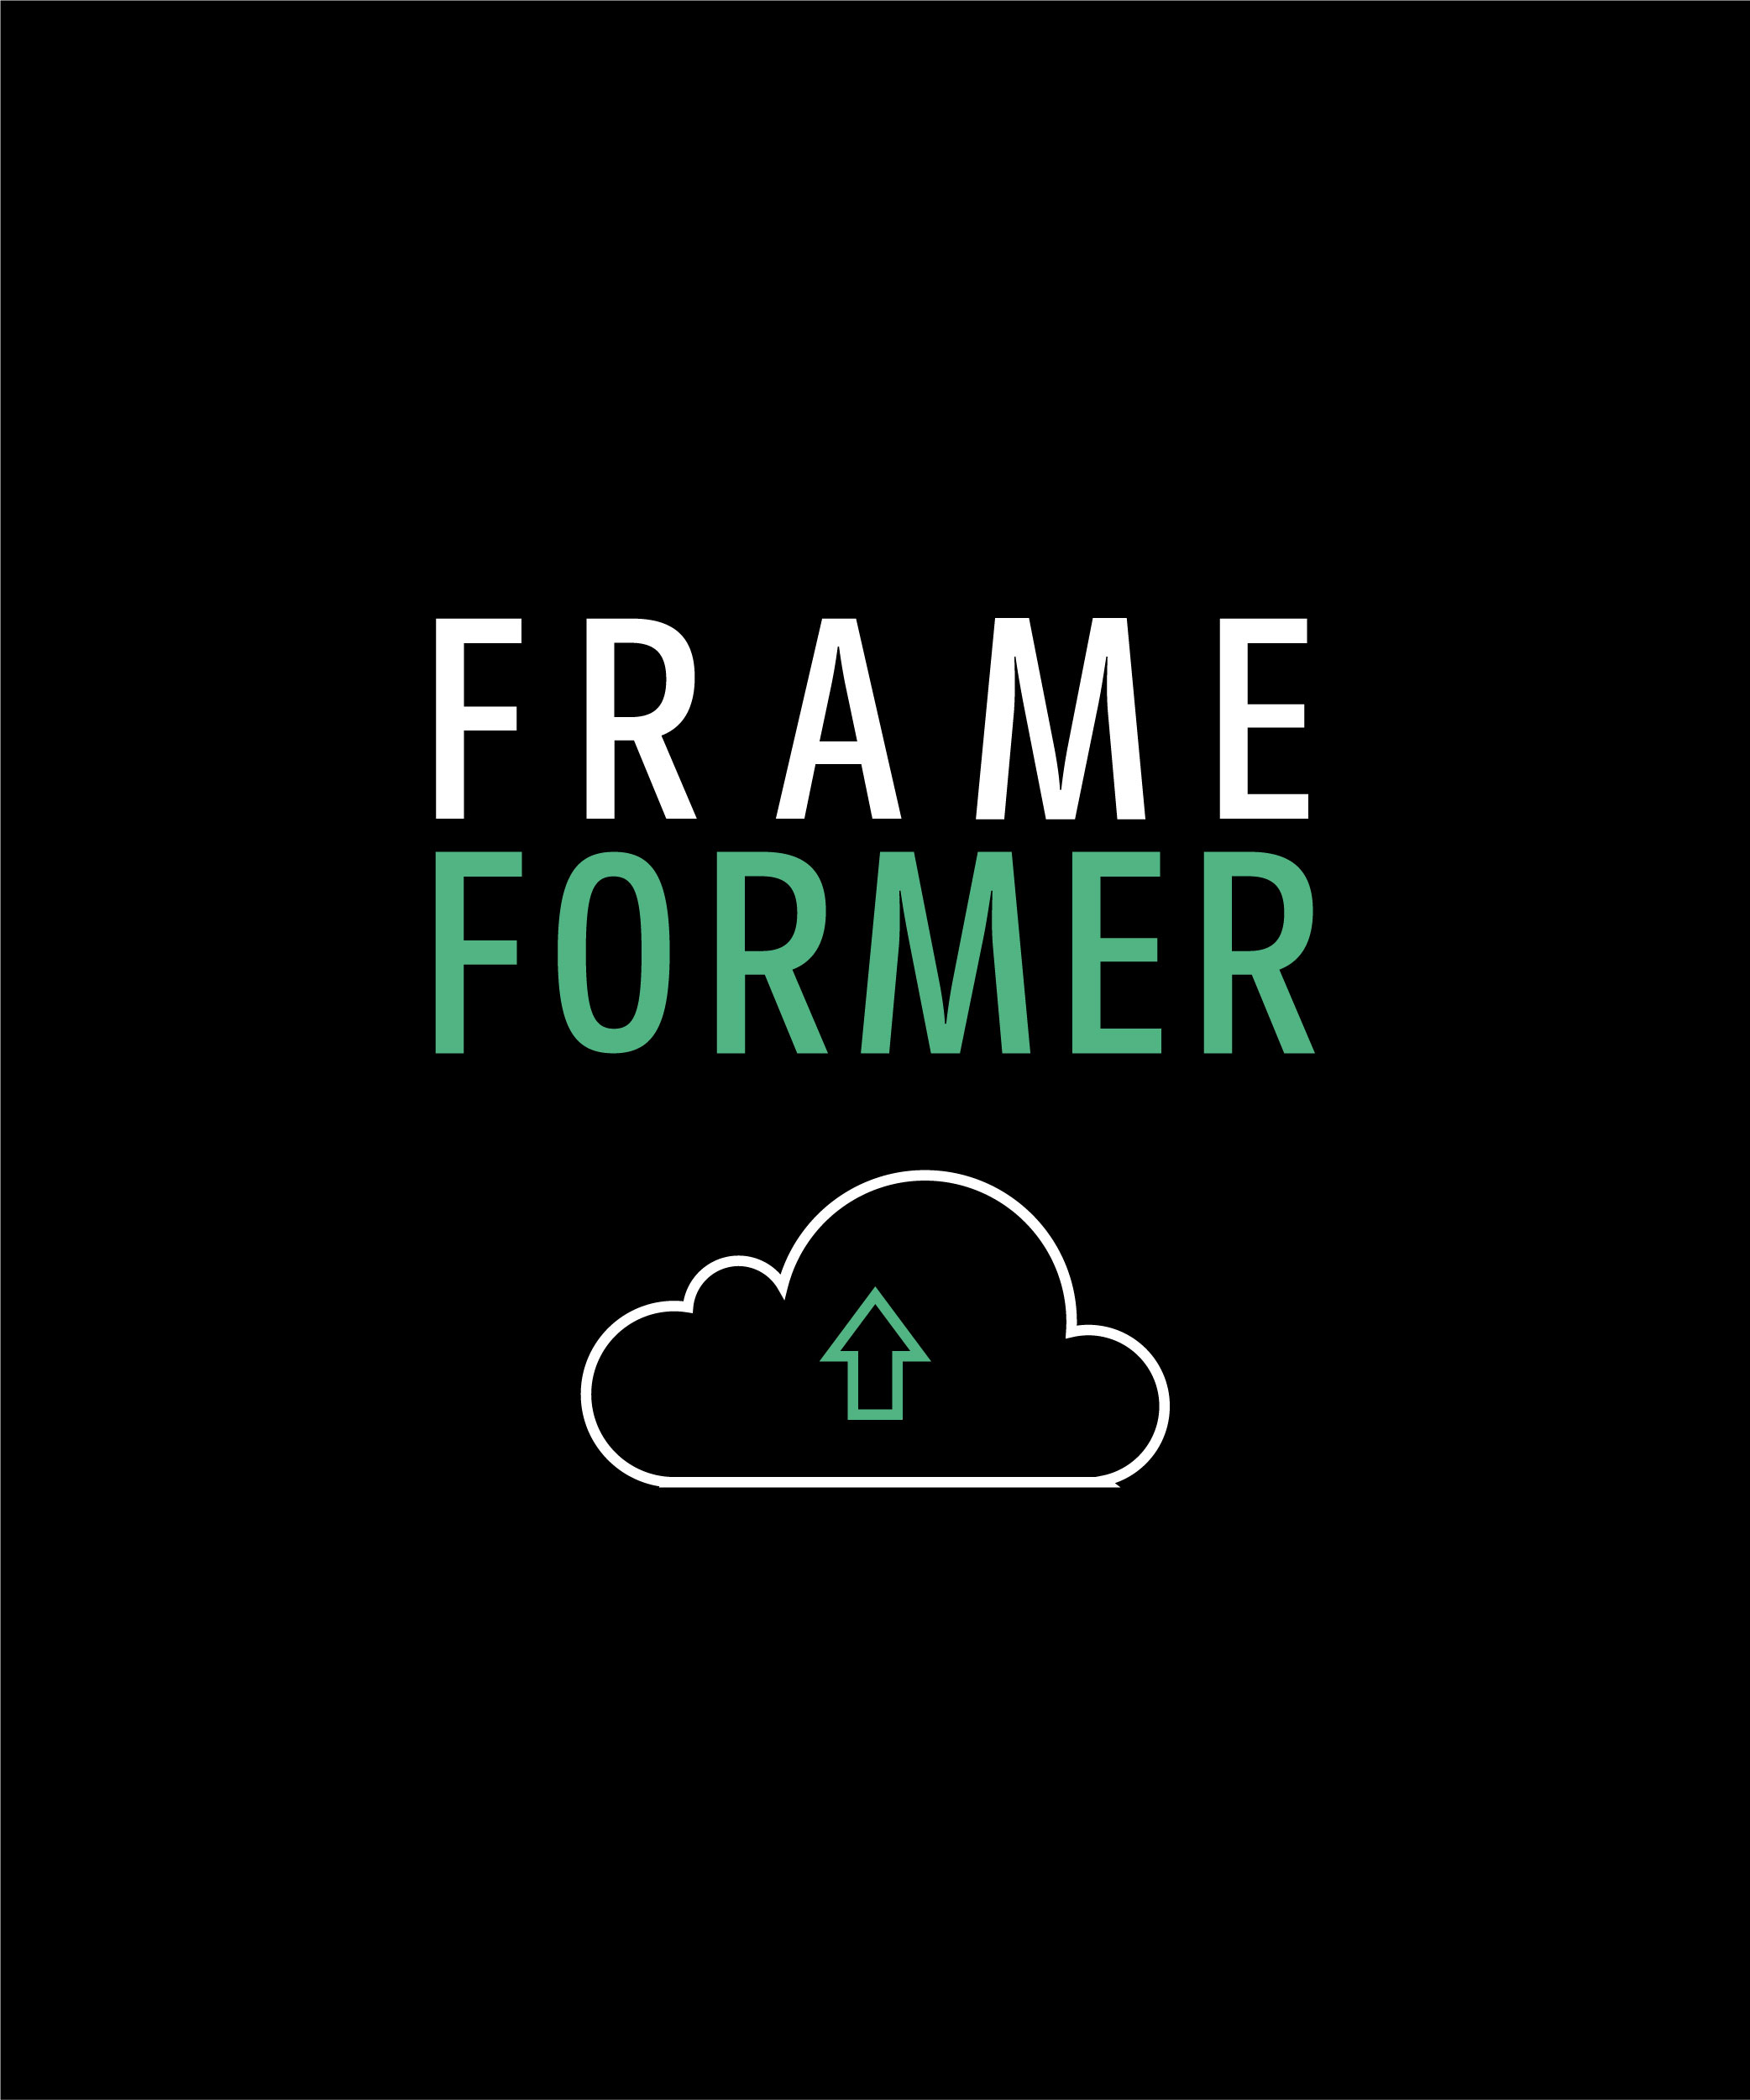 FrameFormer products